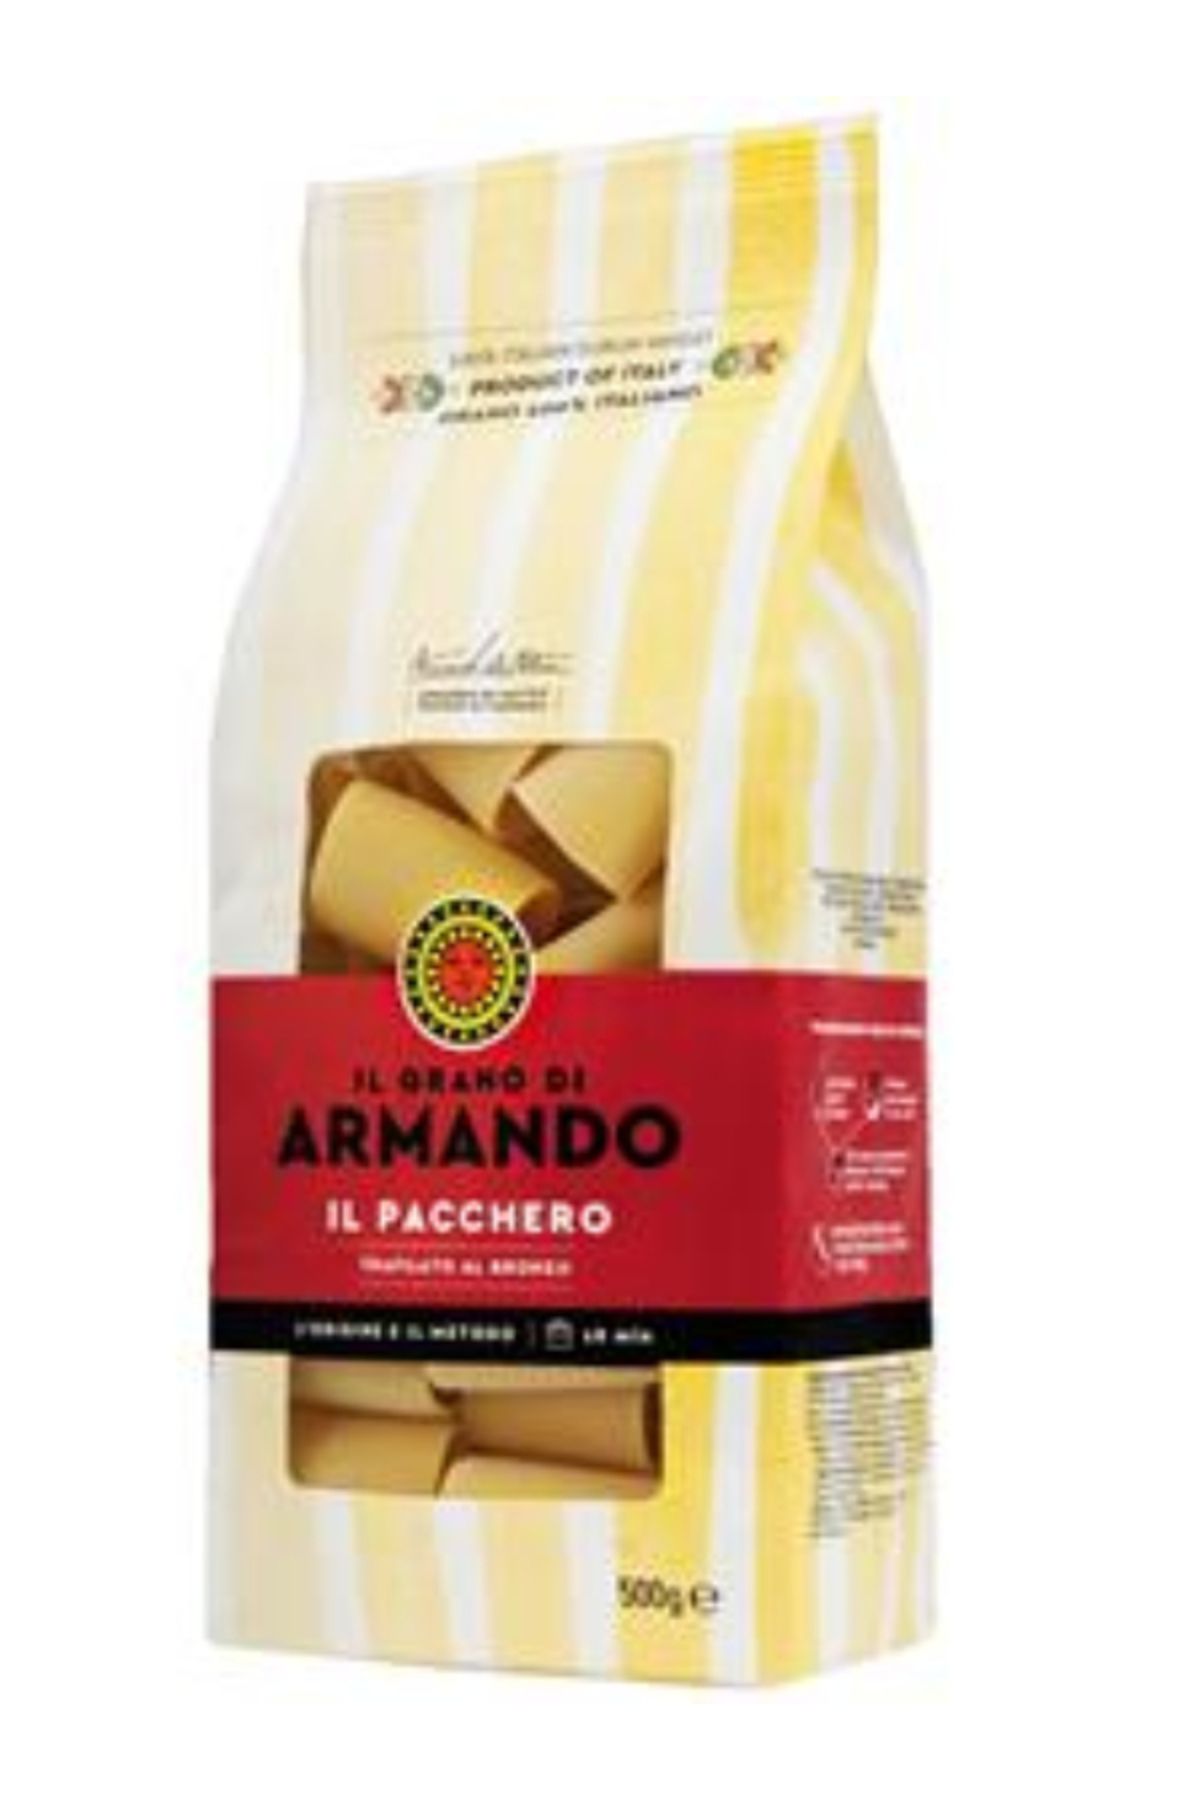 ARMANDO İl Pacchero 500 gr, İtalyan Makarna, Patates Makarnası, Vegan Makarna, Durum Buğdayı Karışım